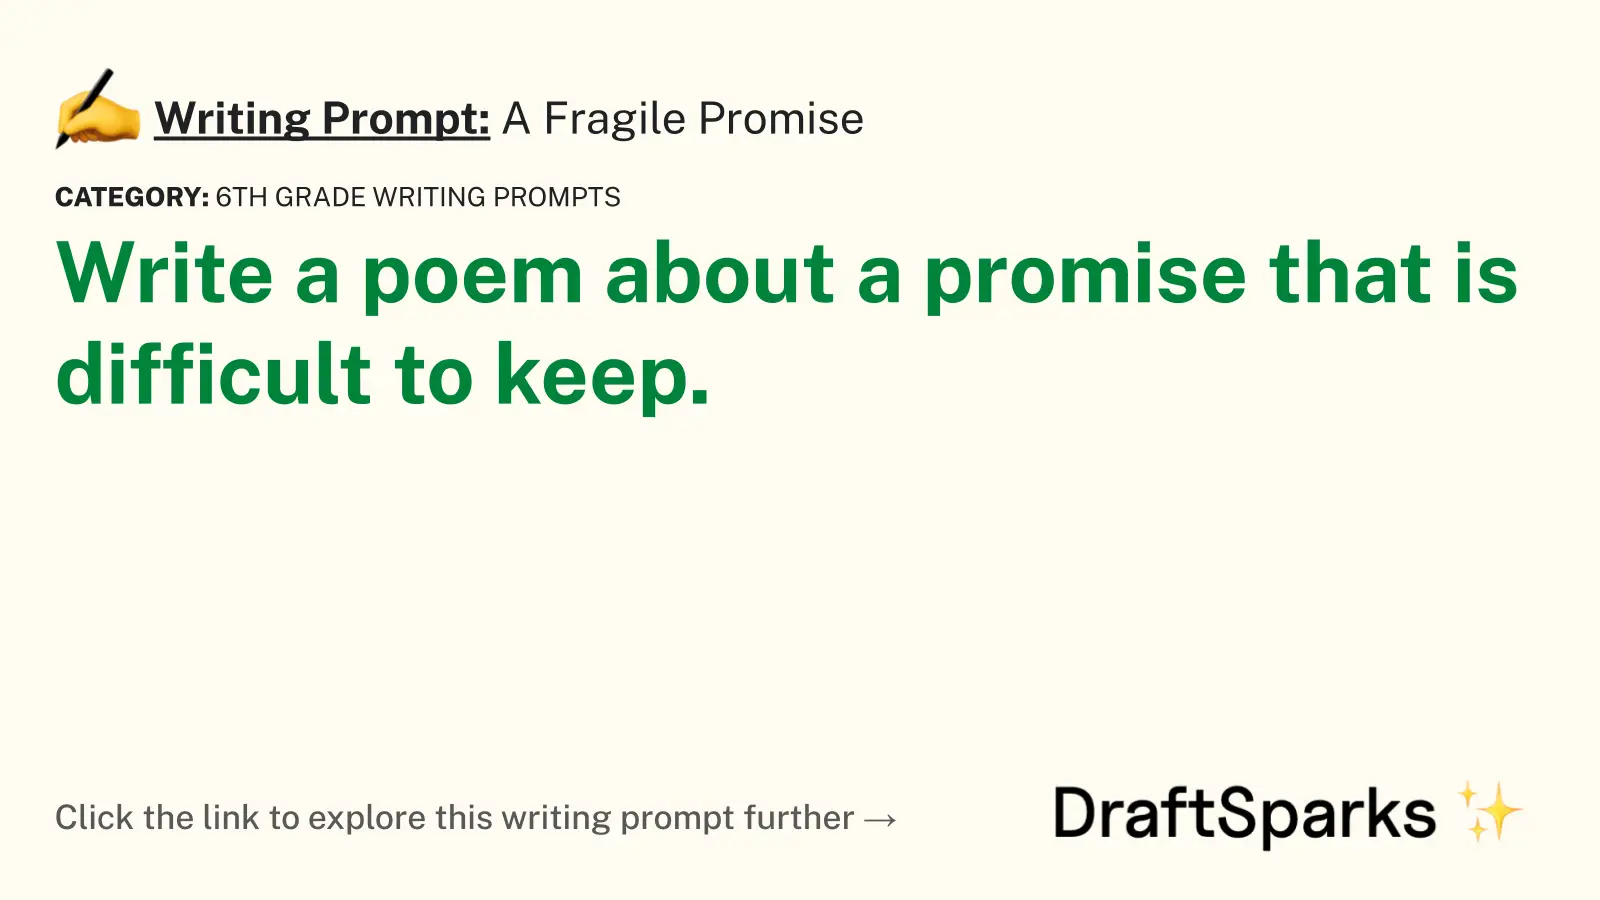 A Fragile Promise